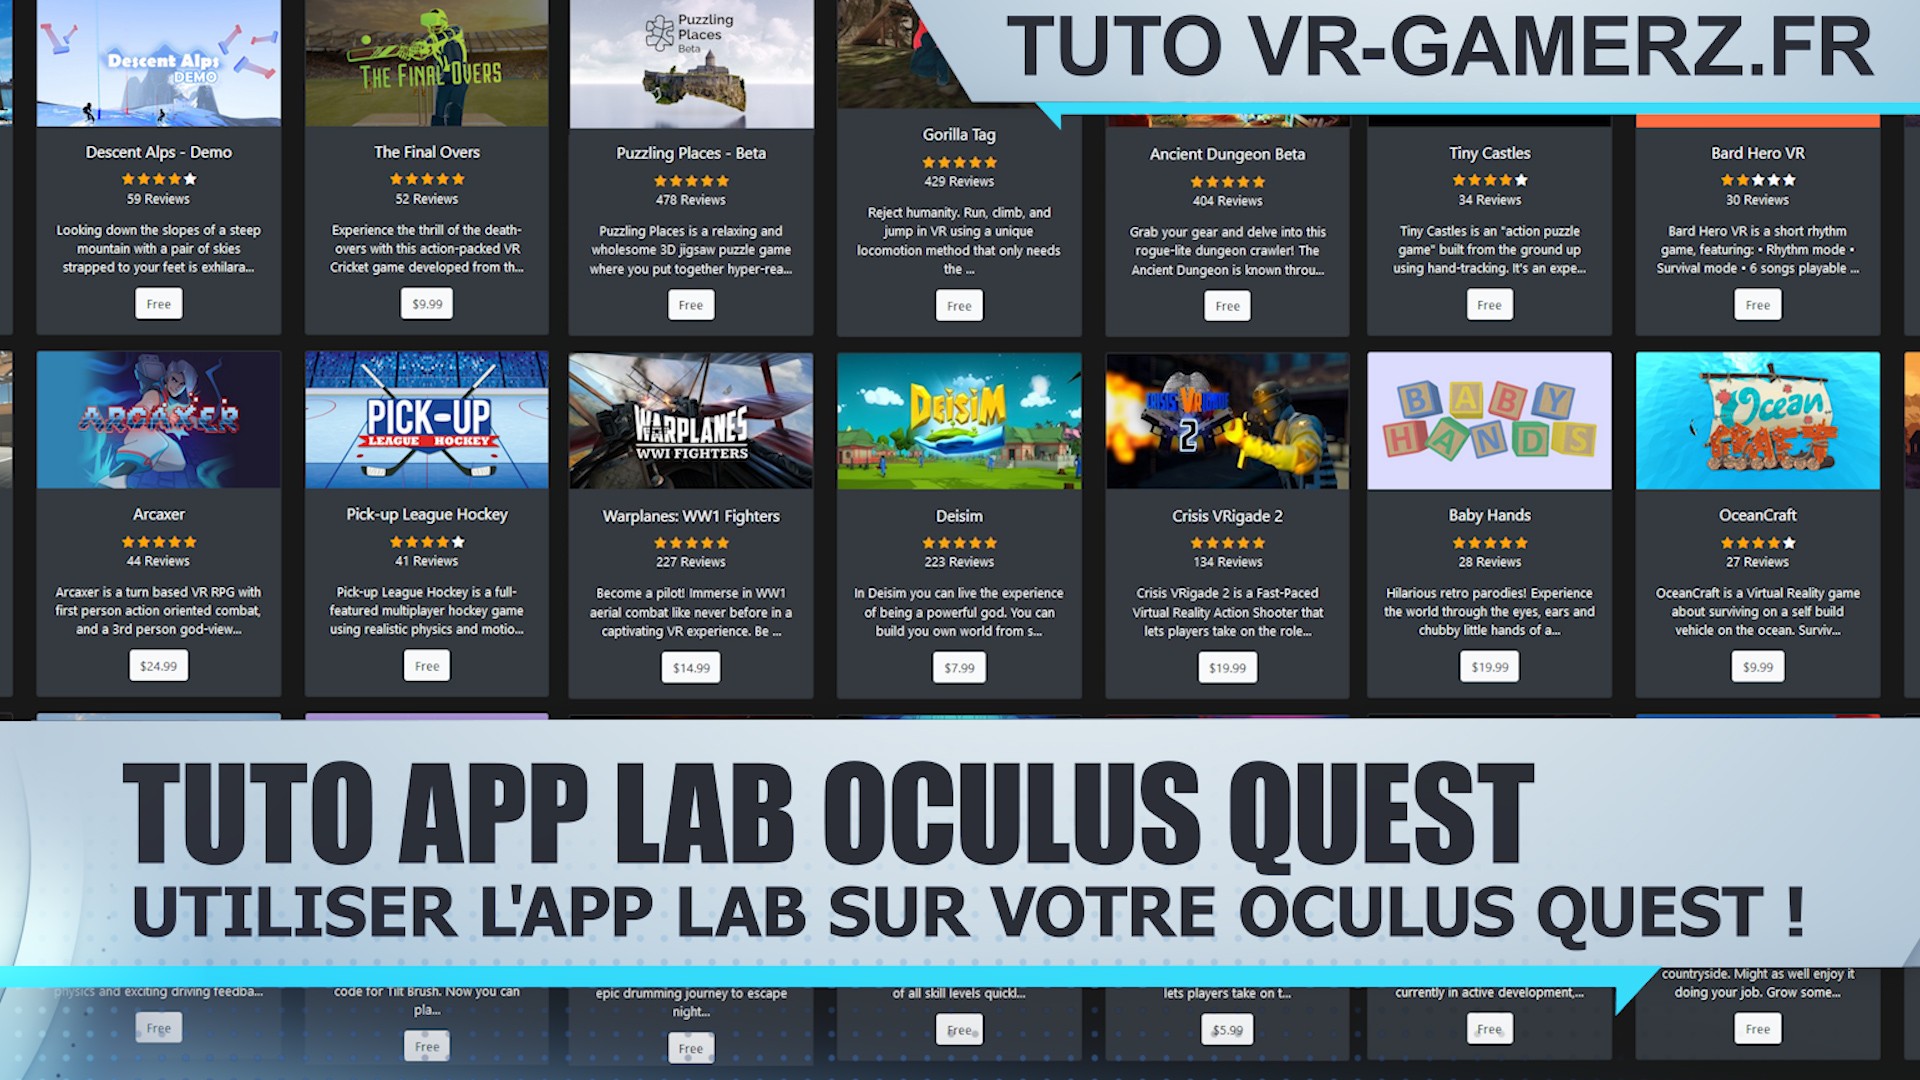 Tuto APP lab Oculus quest : Utiliser l’app lab sur votre Oculus quest !